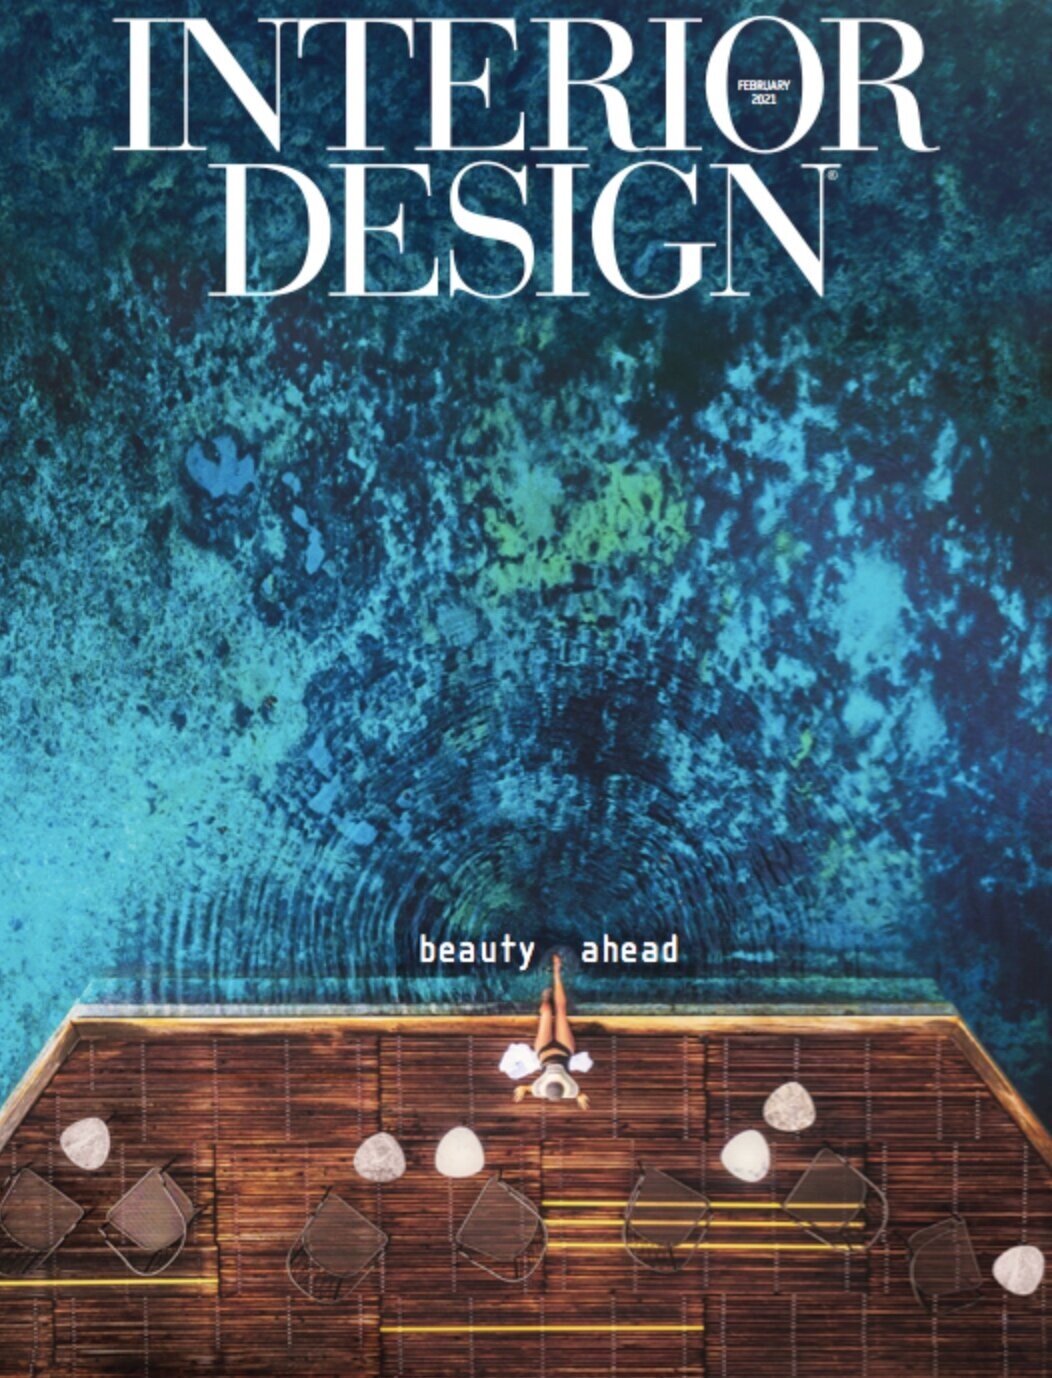 INTERIOR DESIGN - COVER STORY